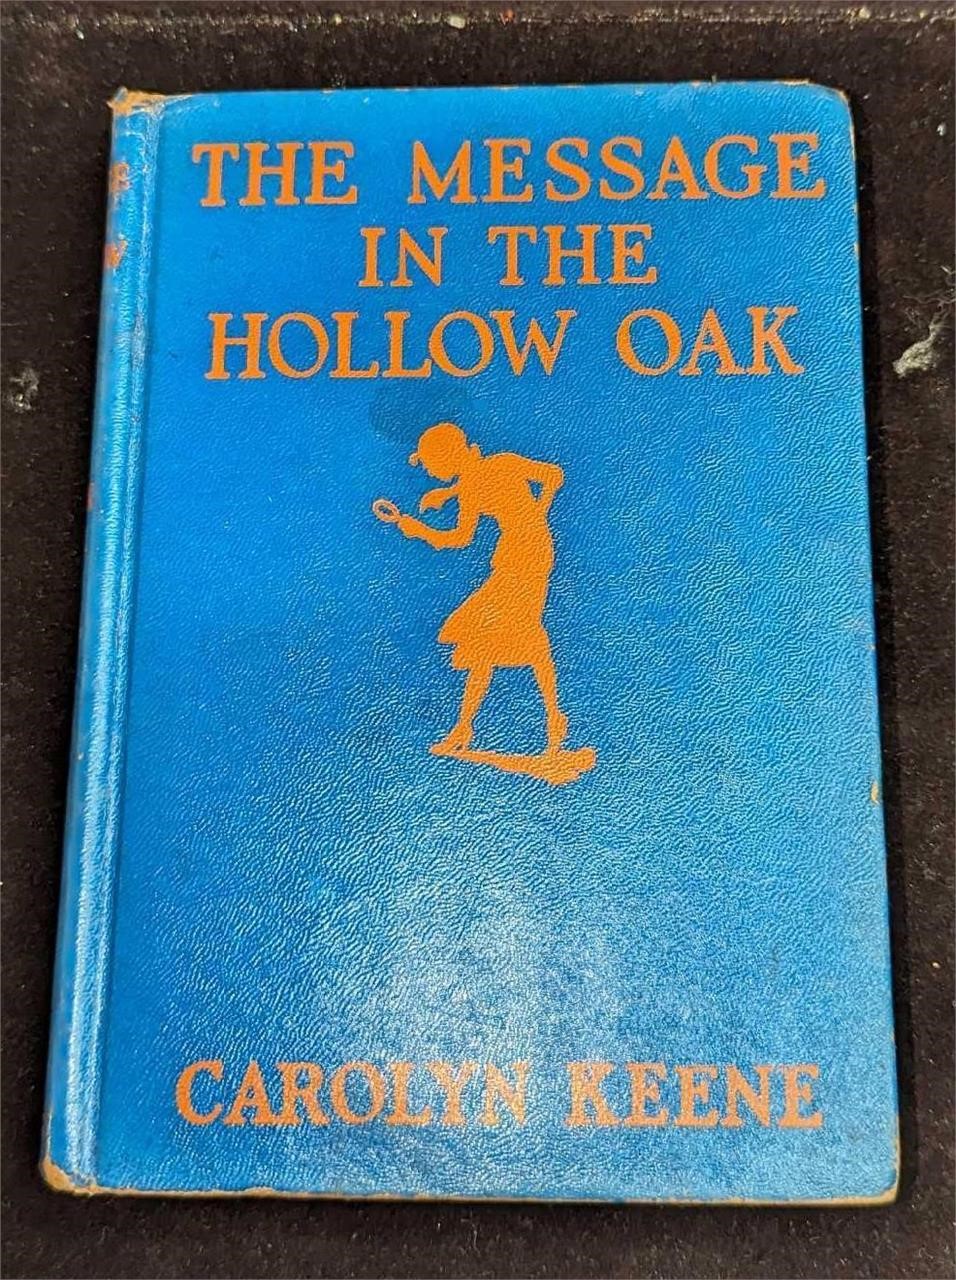 Nancy Drew #12 "The Message In The Hollow Oak" 193